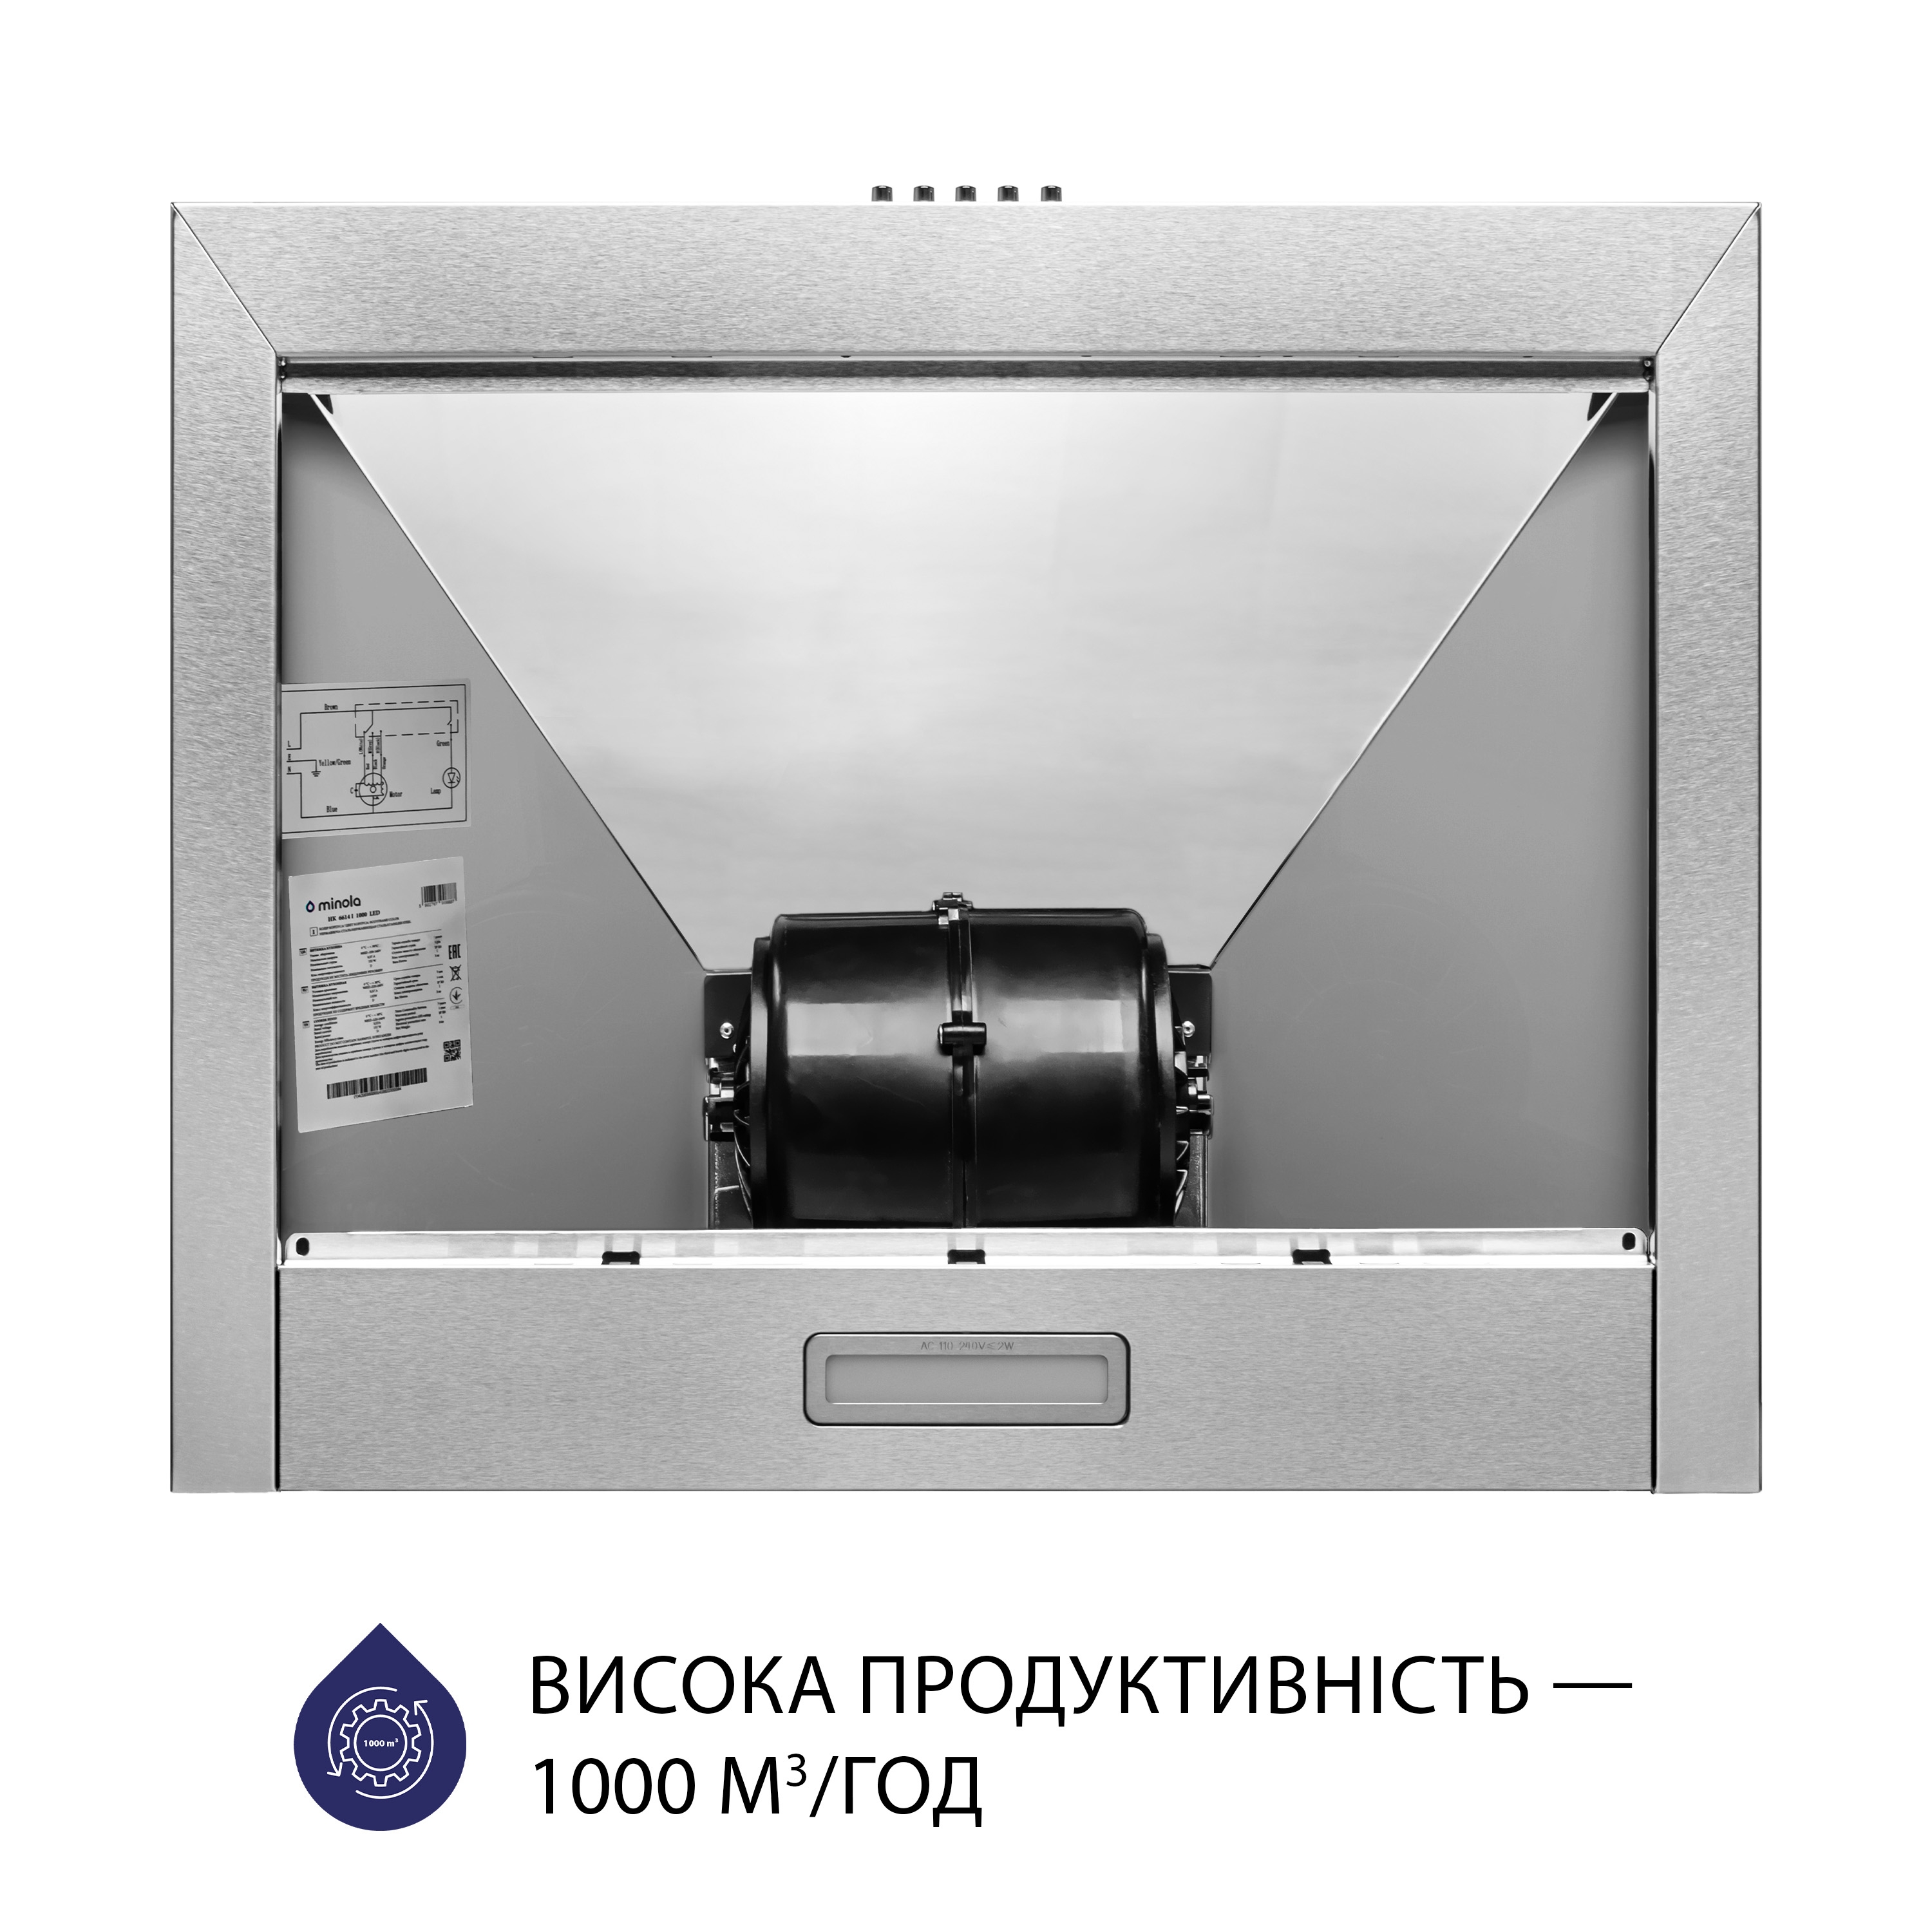 Витяжка кухонная купольная Minola HK 6614 I 1000 LED инструкция - изображение 6